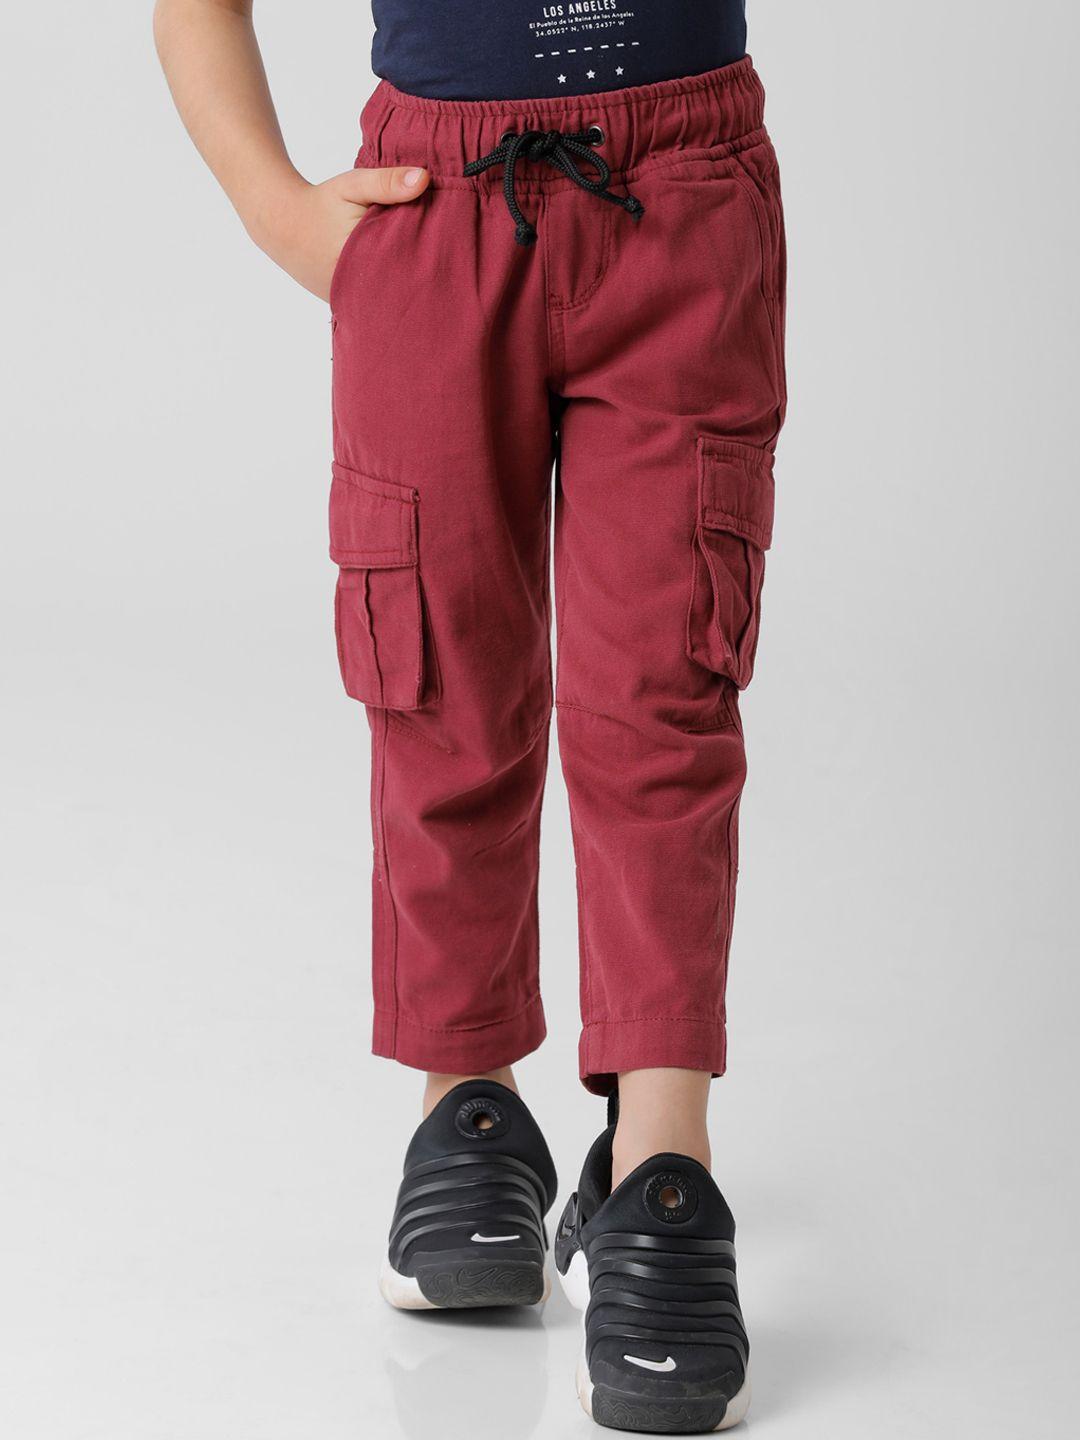 kate & oscar boys burgundy cargos trousers